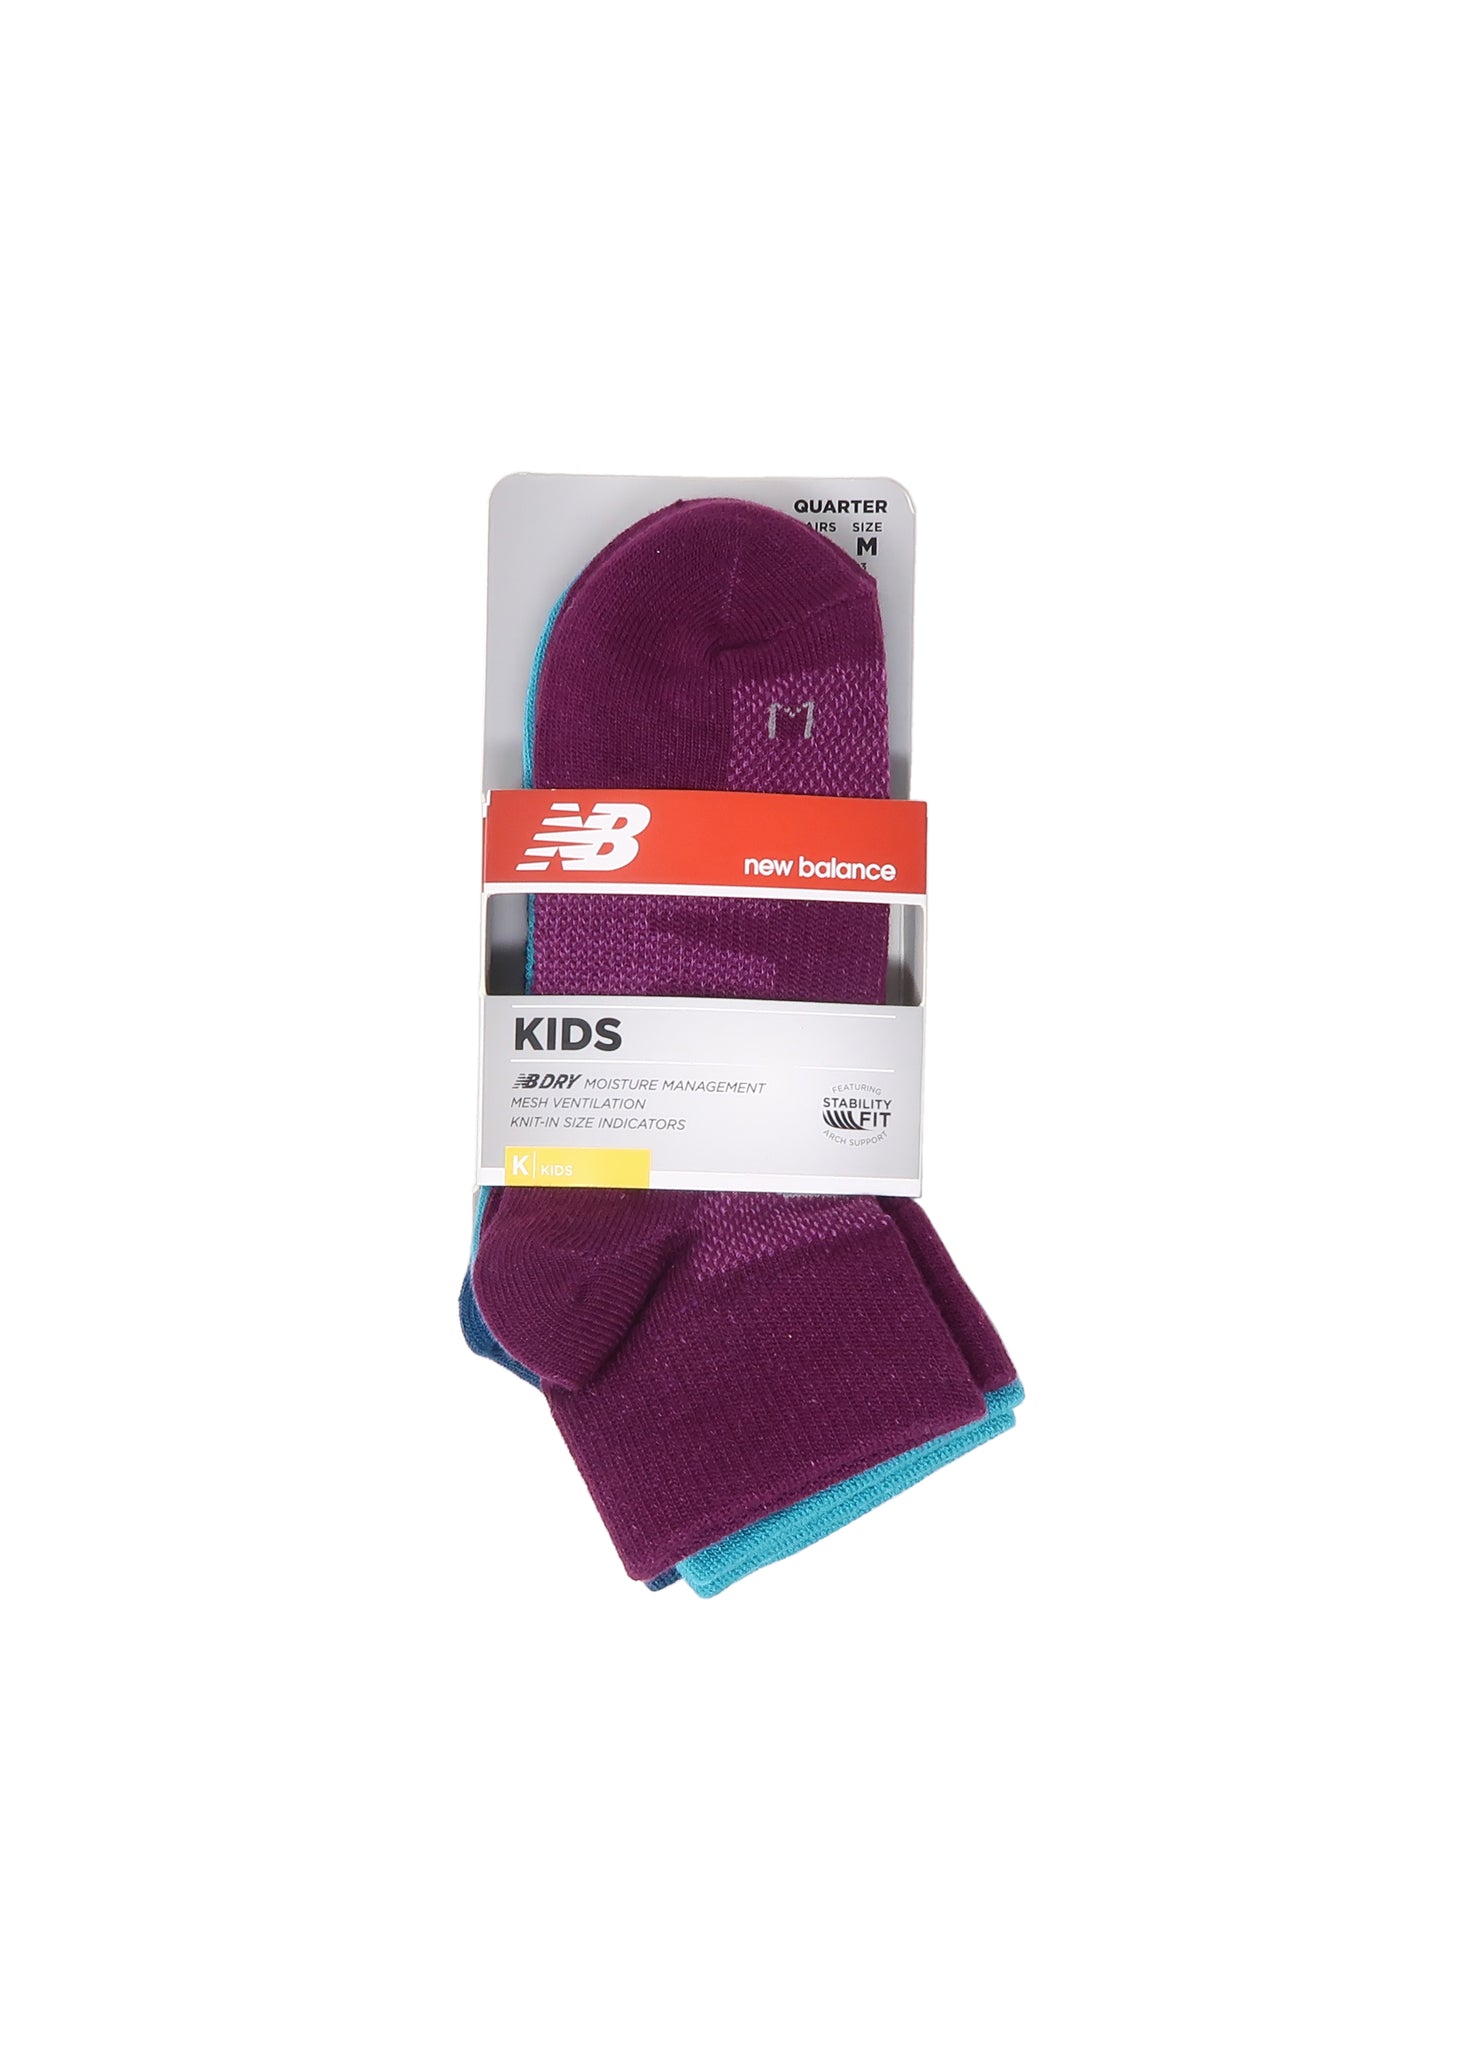 New Balance Kids 3-Pairs Multi Color Quarter Socks